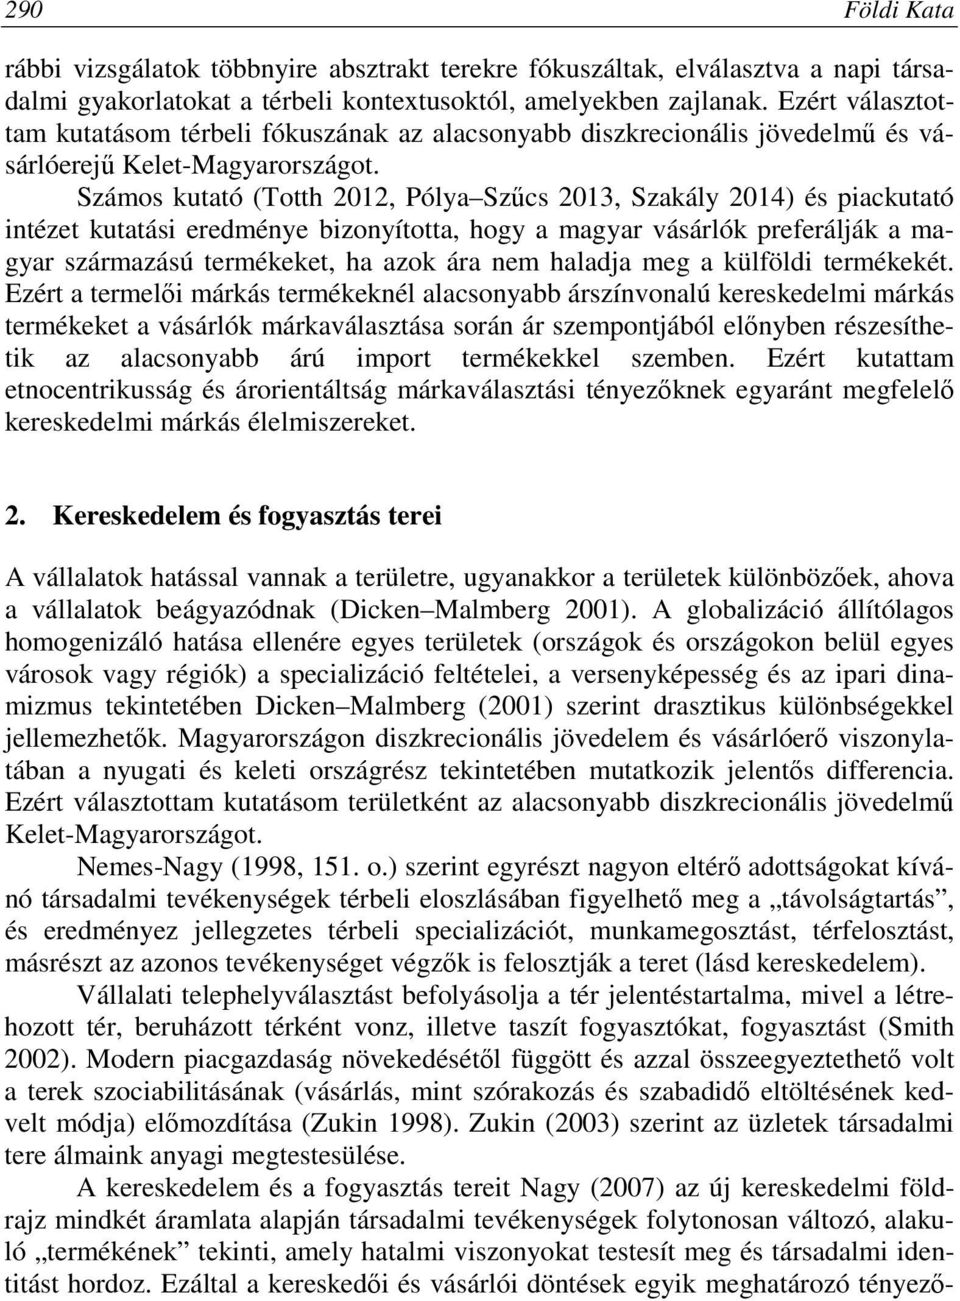 Számos kutató (Totth 2012, Pólya Szűcs 2013, Szakály 2014) és piackutató intézet kutatási eredménye bizonyította, hogy a magyar vásárlók preferálják a magyar származású termékeket, ha azok ára nem